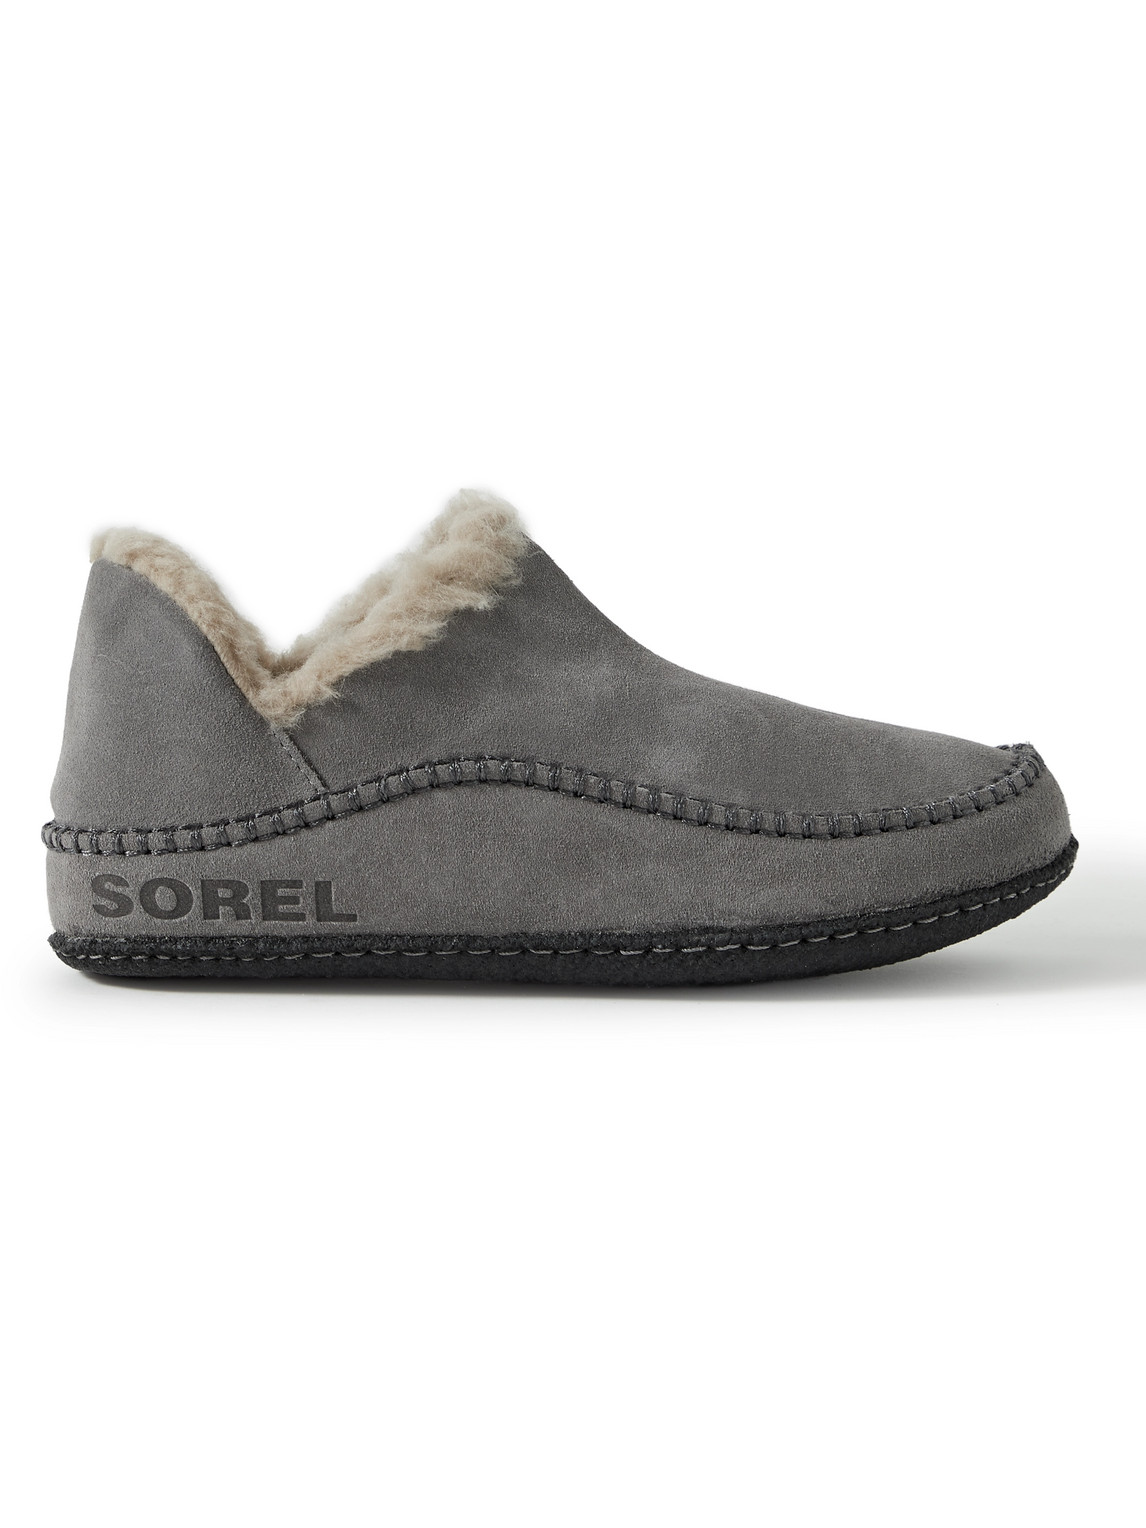 Sorel Men's Ii Faux Fur-lined Suede Slipper Shoes Quarry | ModeSens